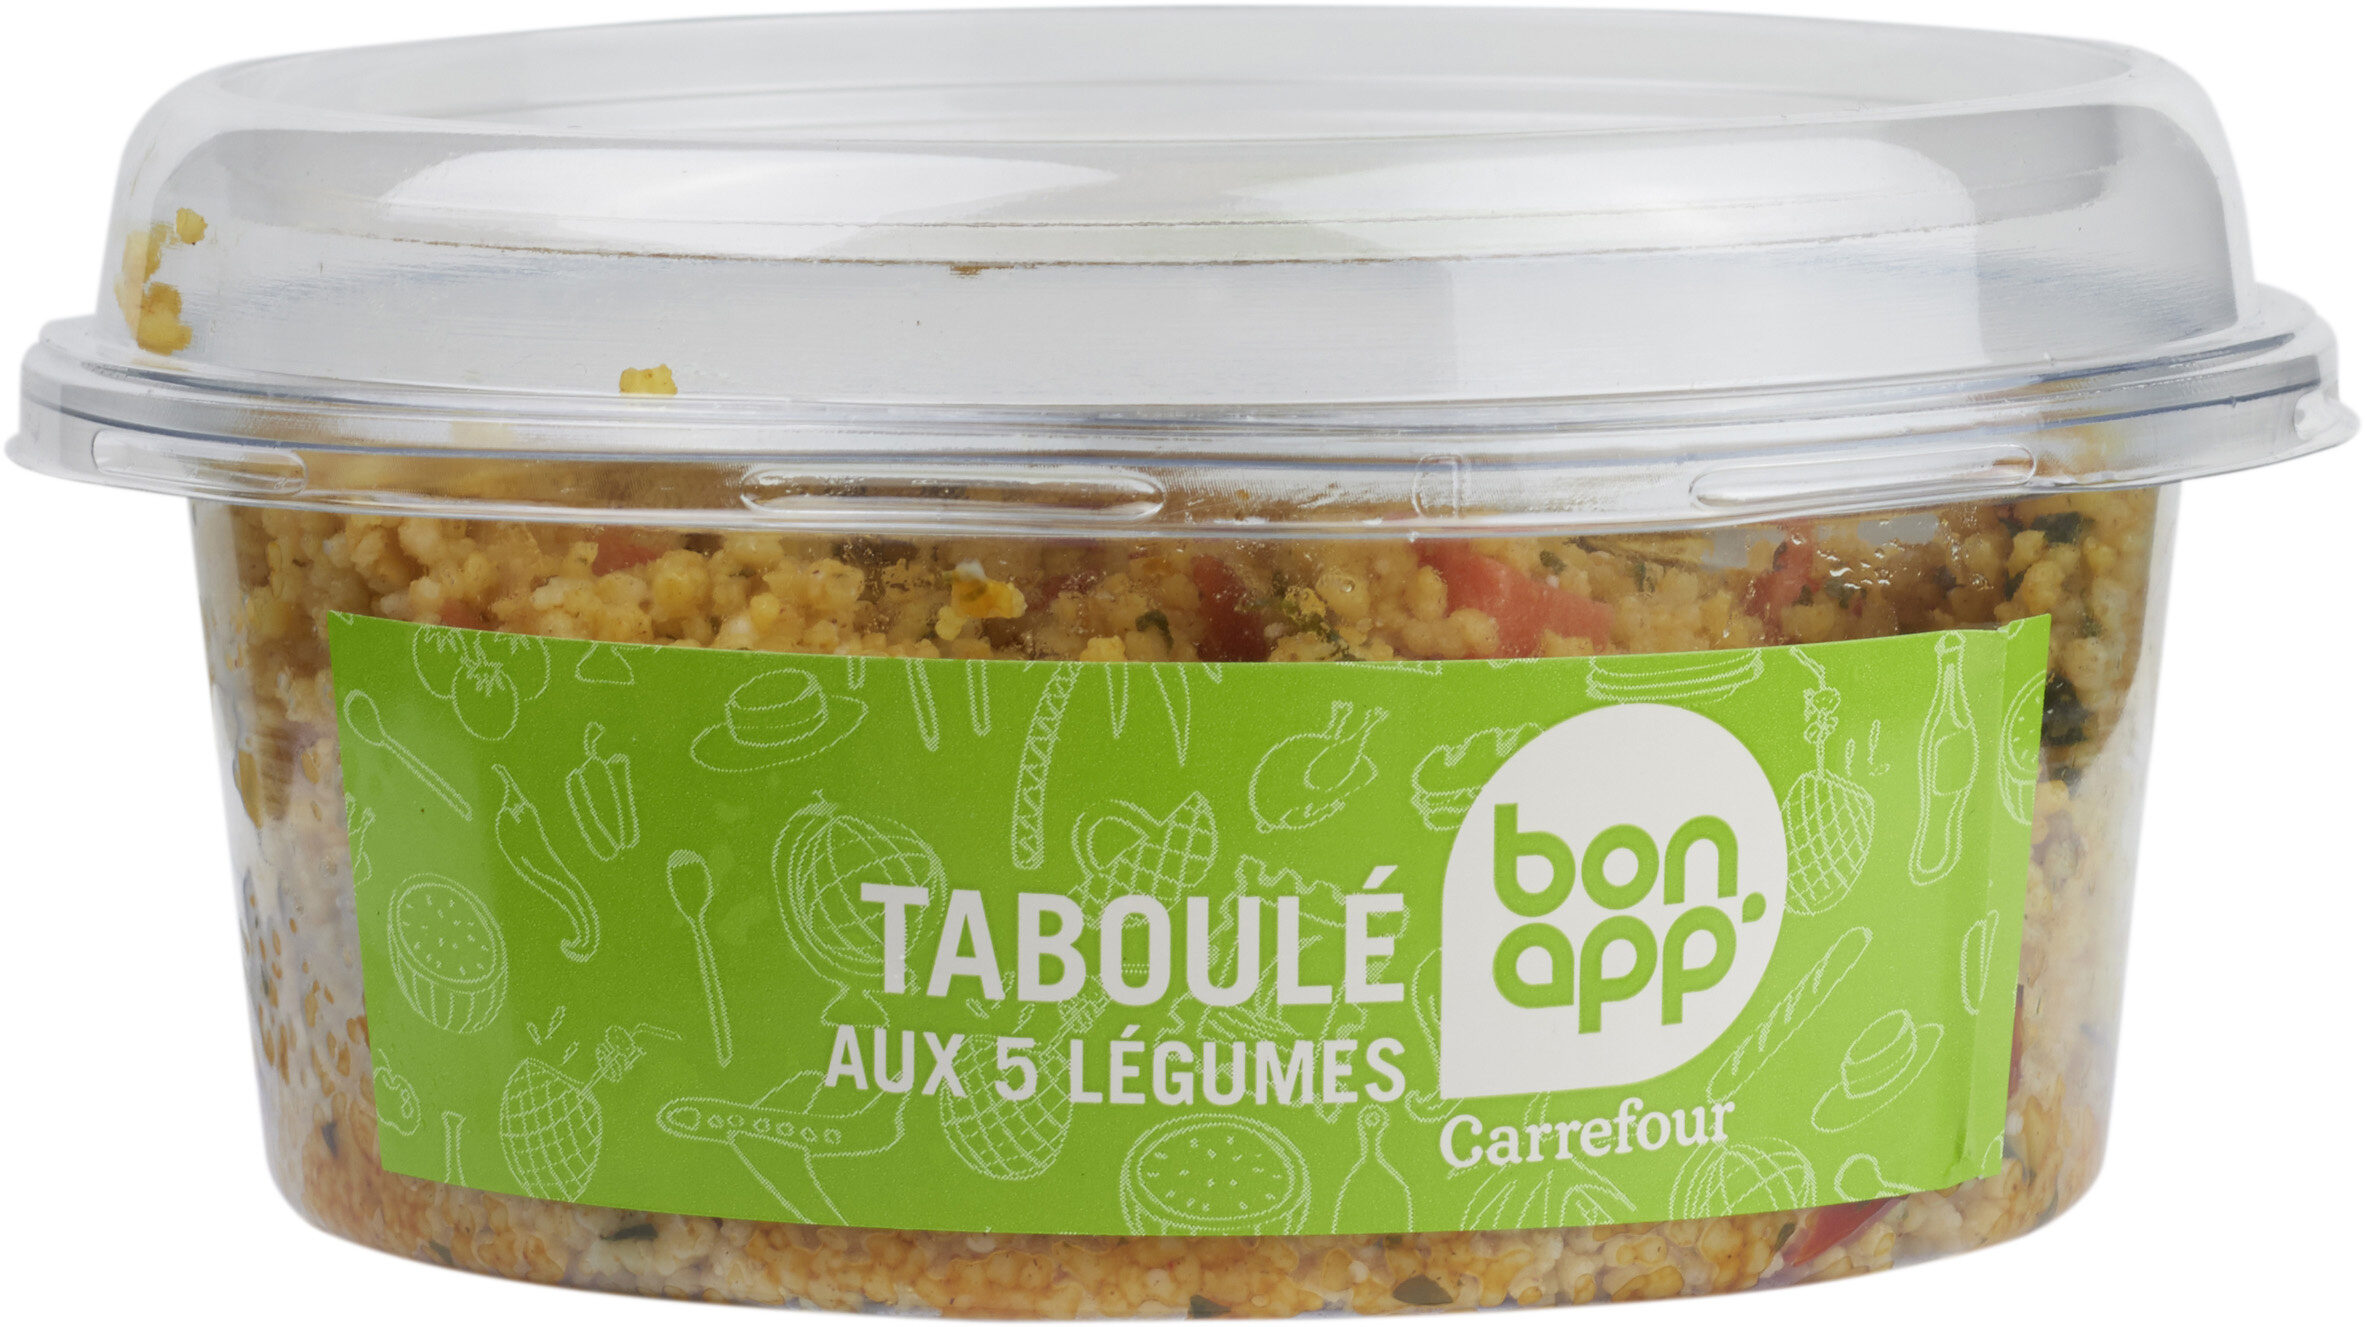 Taboulé aux 5 Légumes, Les Classiques - نتاج - fr